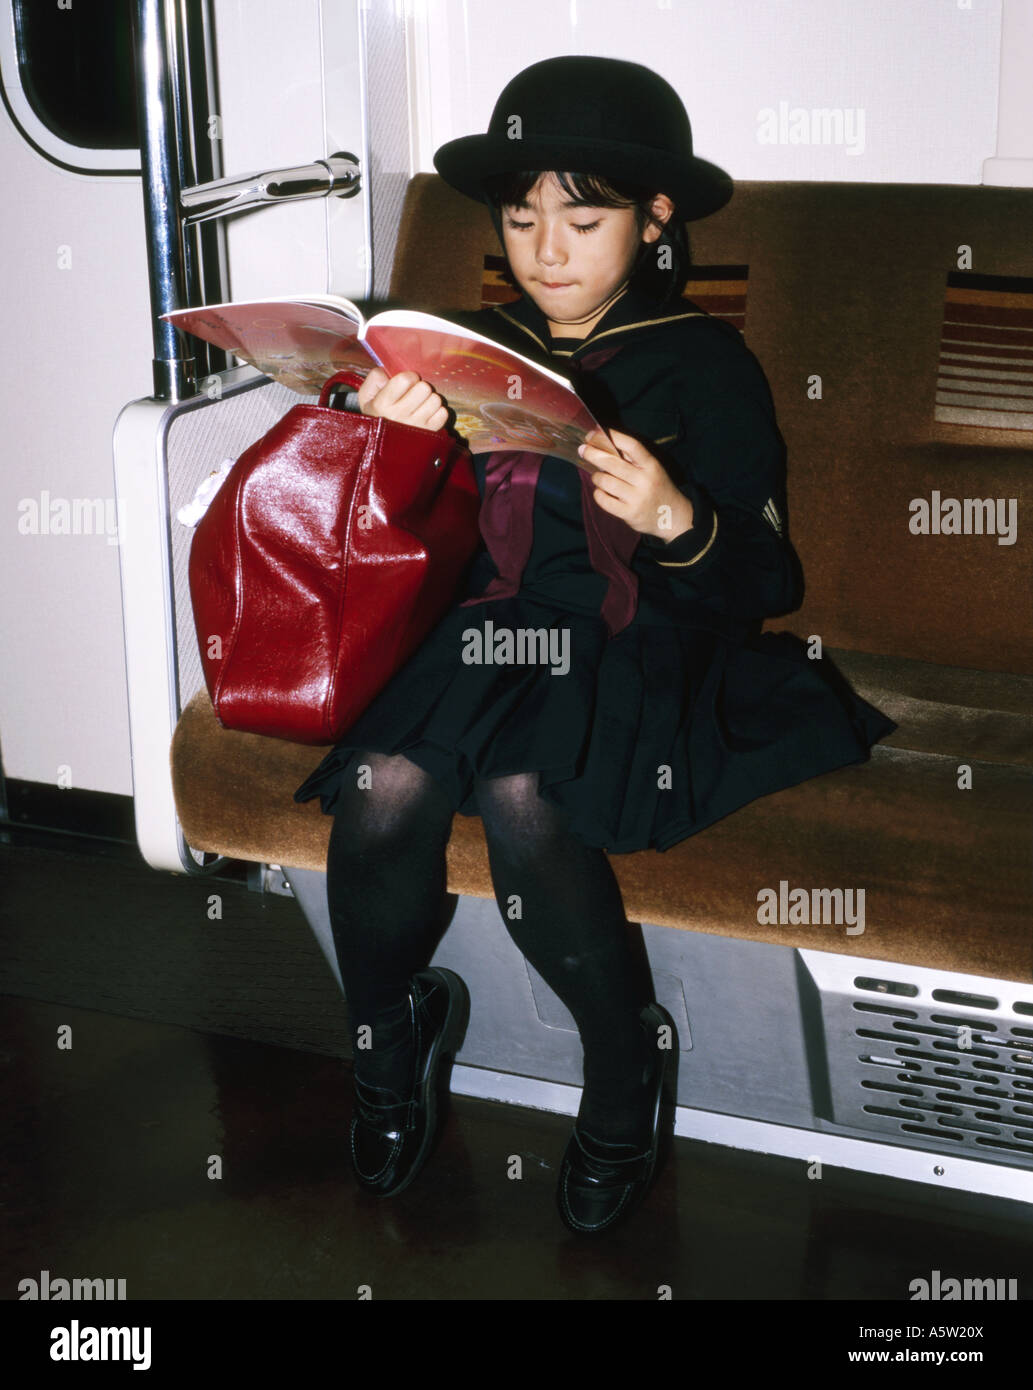 Ragazza giovane,perfettamente vestito nella sua uniforme scolastica,legge da un libro sul treno della metropolitana,Tokyo, Giappone. Foto Stock